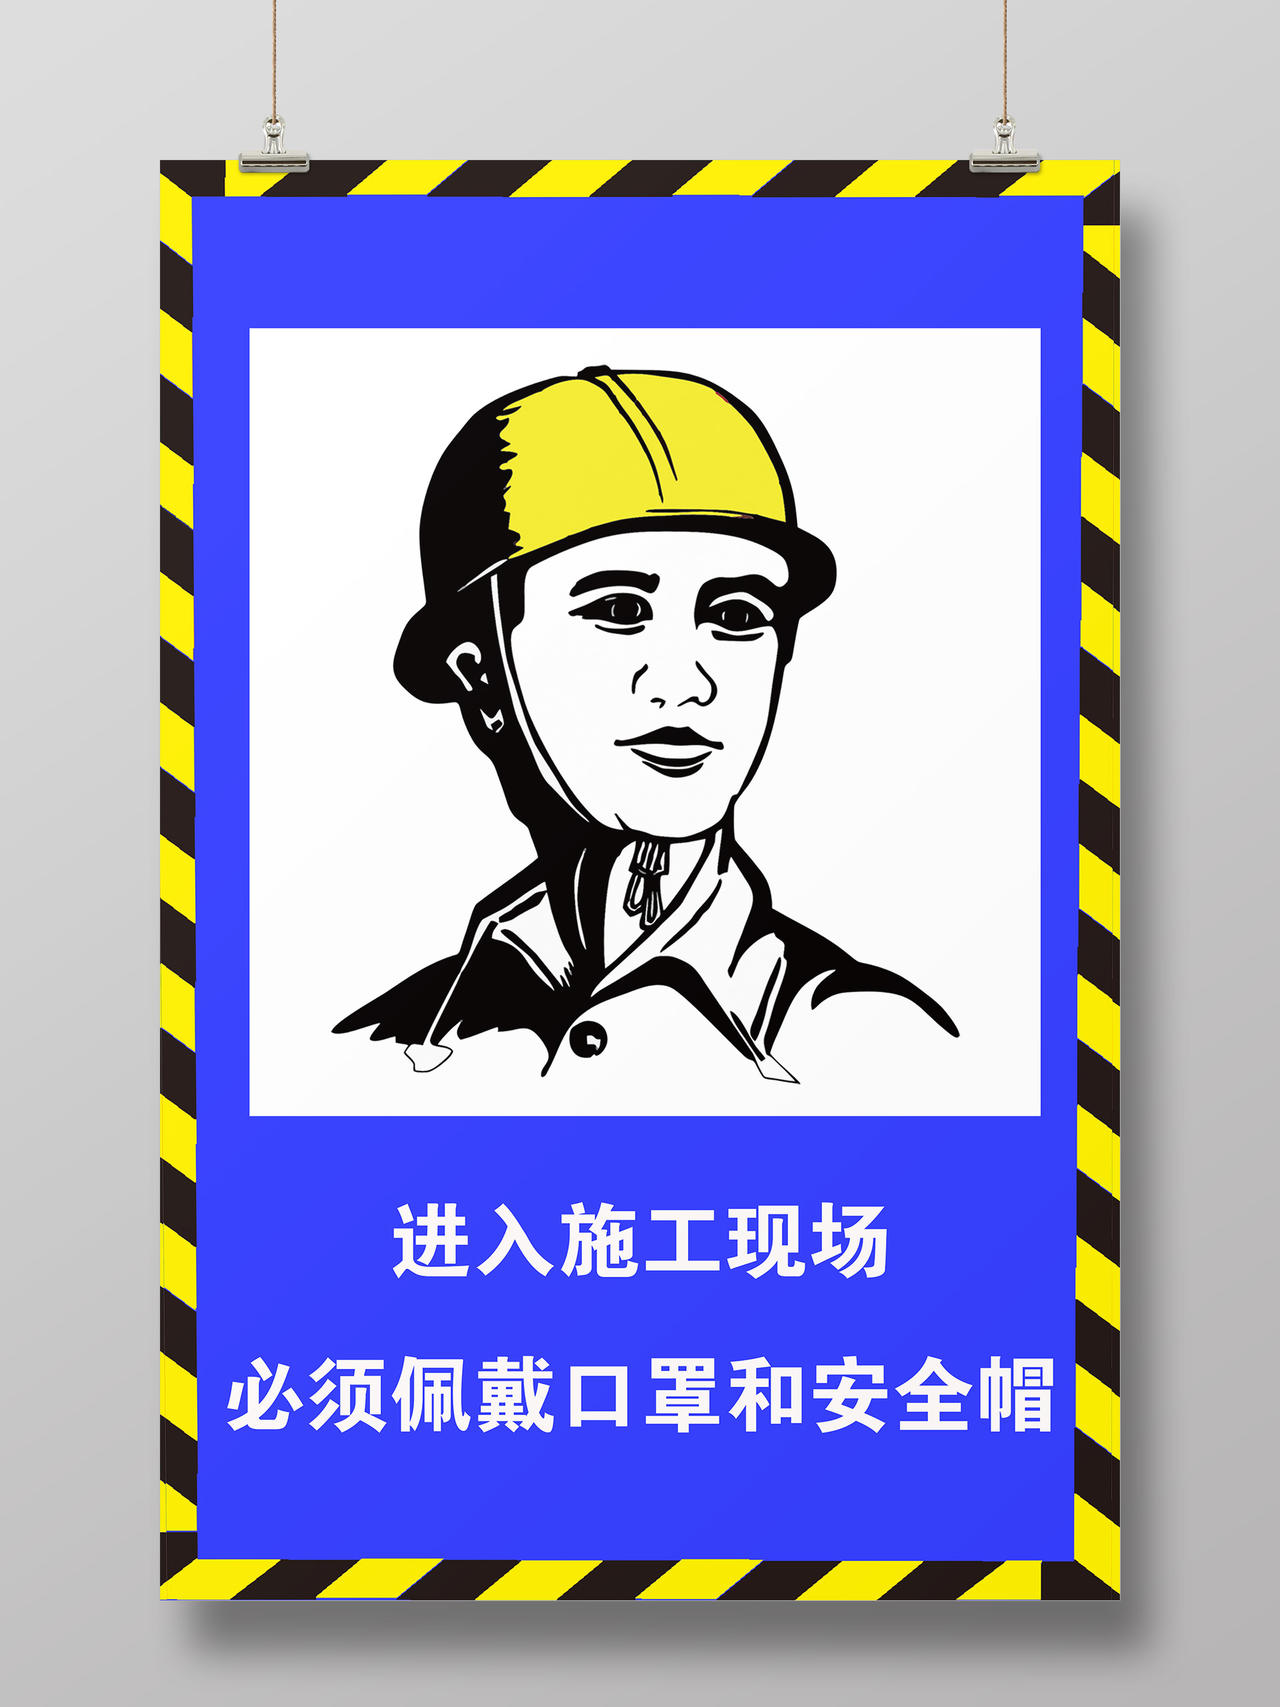 蓝色大气进入施工现场必须佩戴口罩和安全帽宣传海报进入施工现场戴安全帽